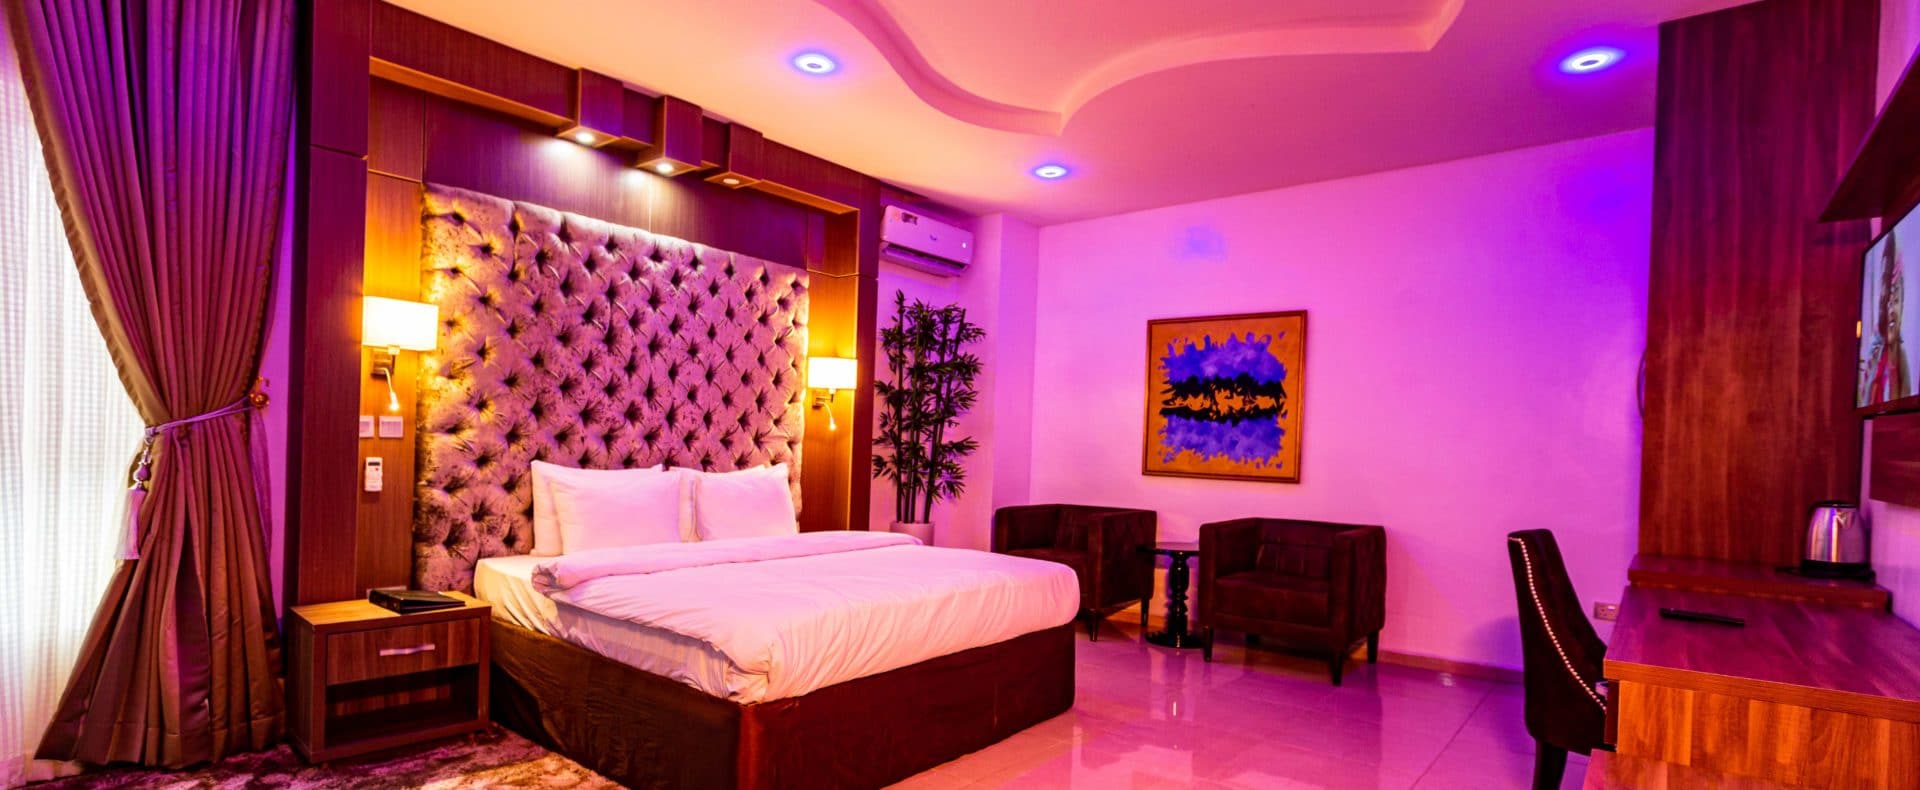 Hotel Diamond Suite In Owerri Imo Nigeria